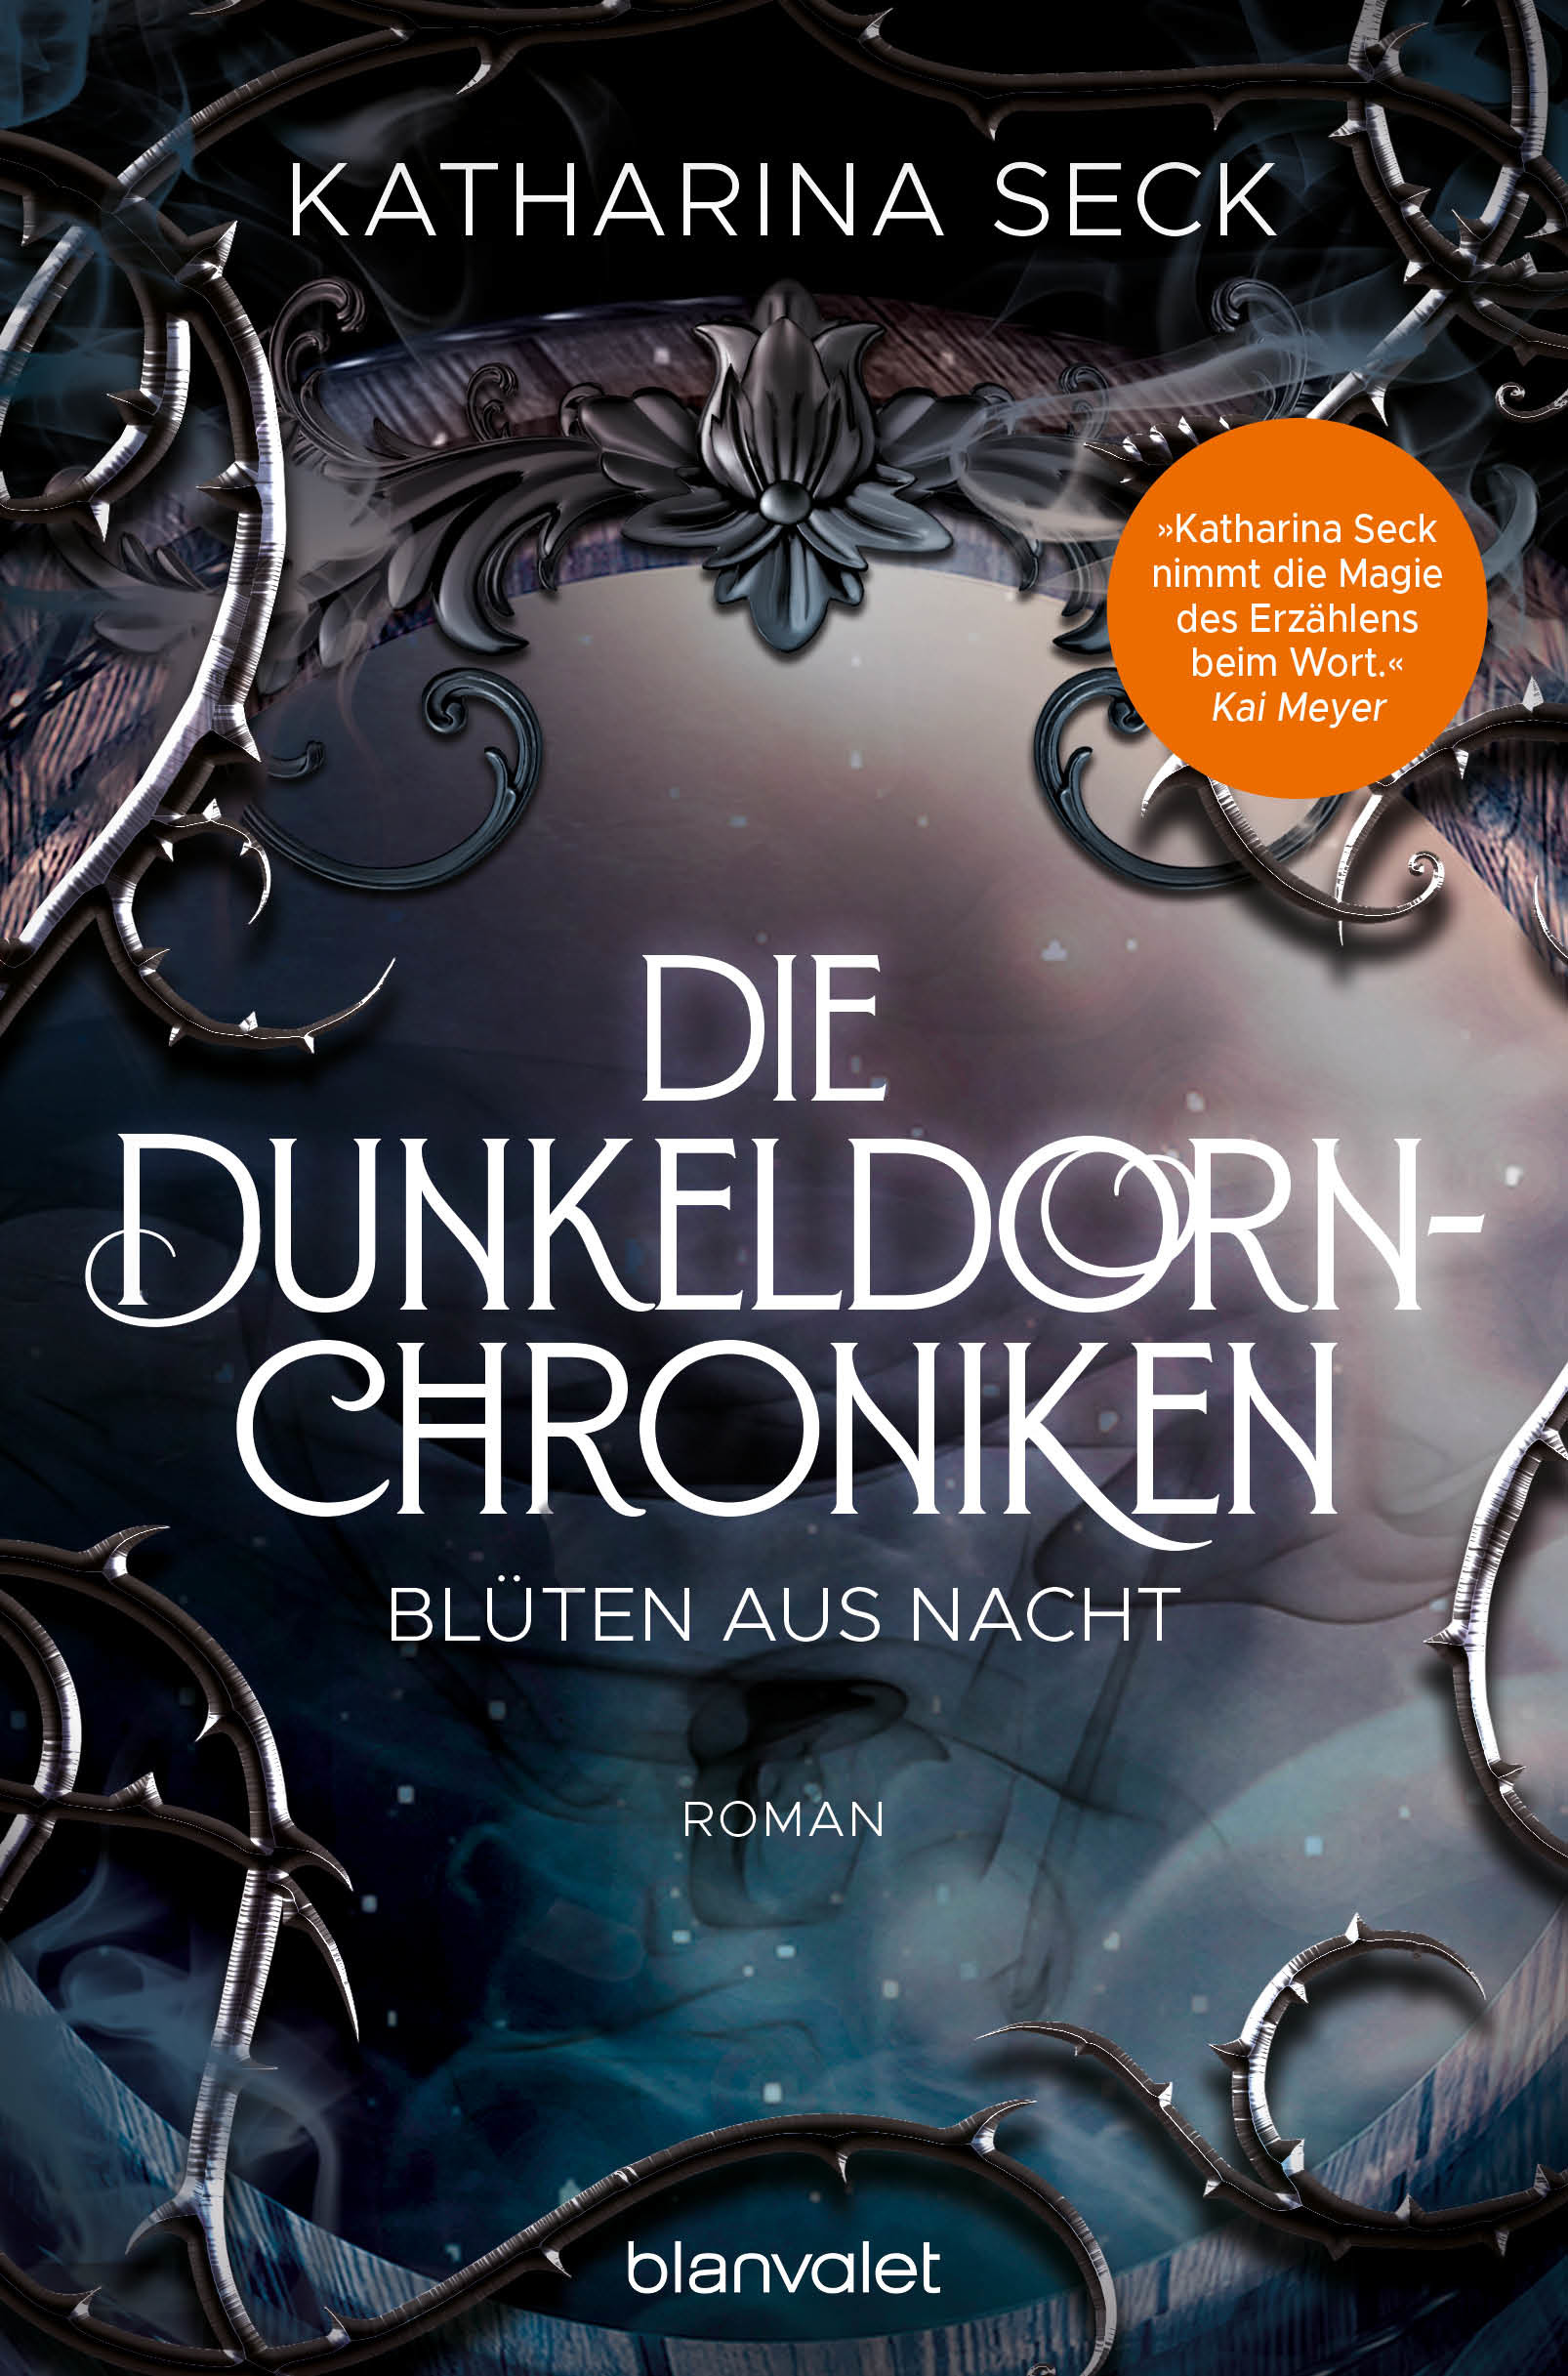 Bücherblog. Neuerscheinungen. Buchcover. Die Dunkeldorn-Chroniken - Blüten aus Nacht von Katharina Seck. Fantasy. blanvalet.